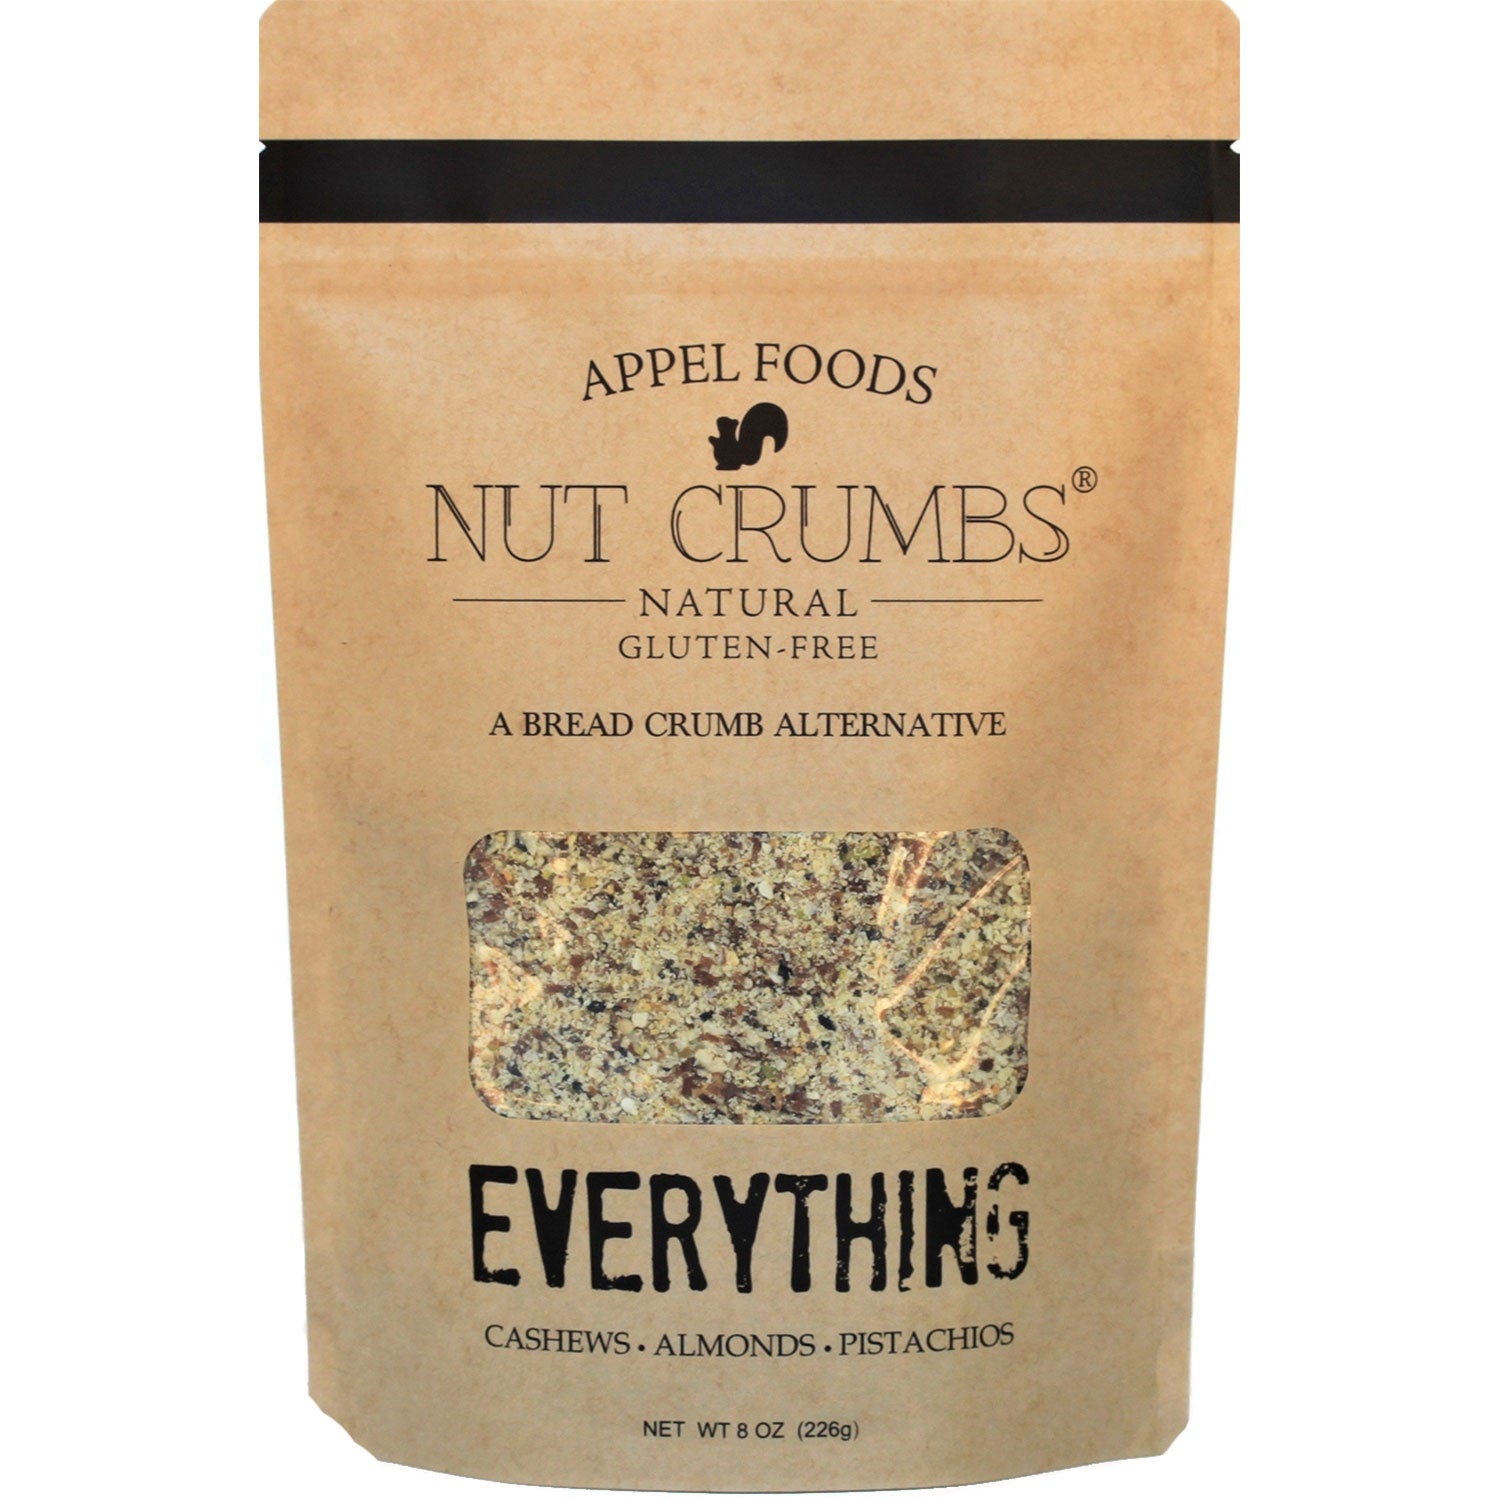 Appel Foods Nut Crumbs